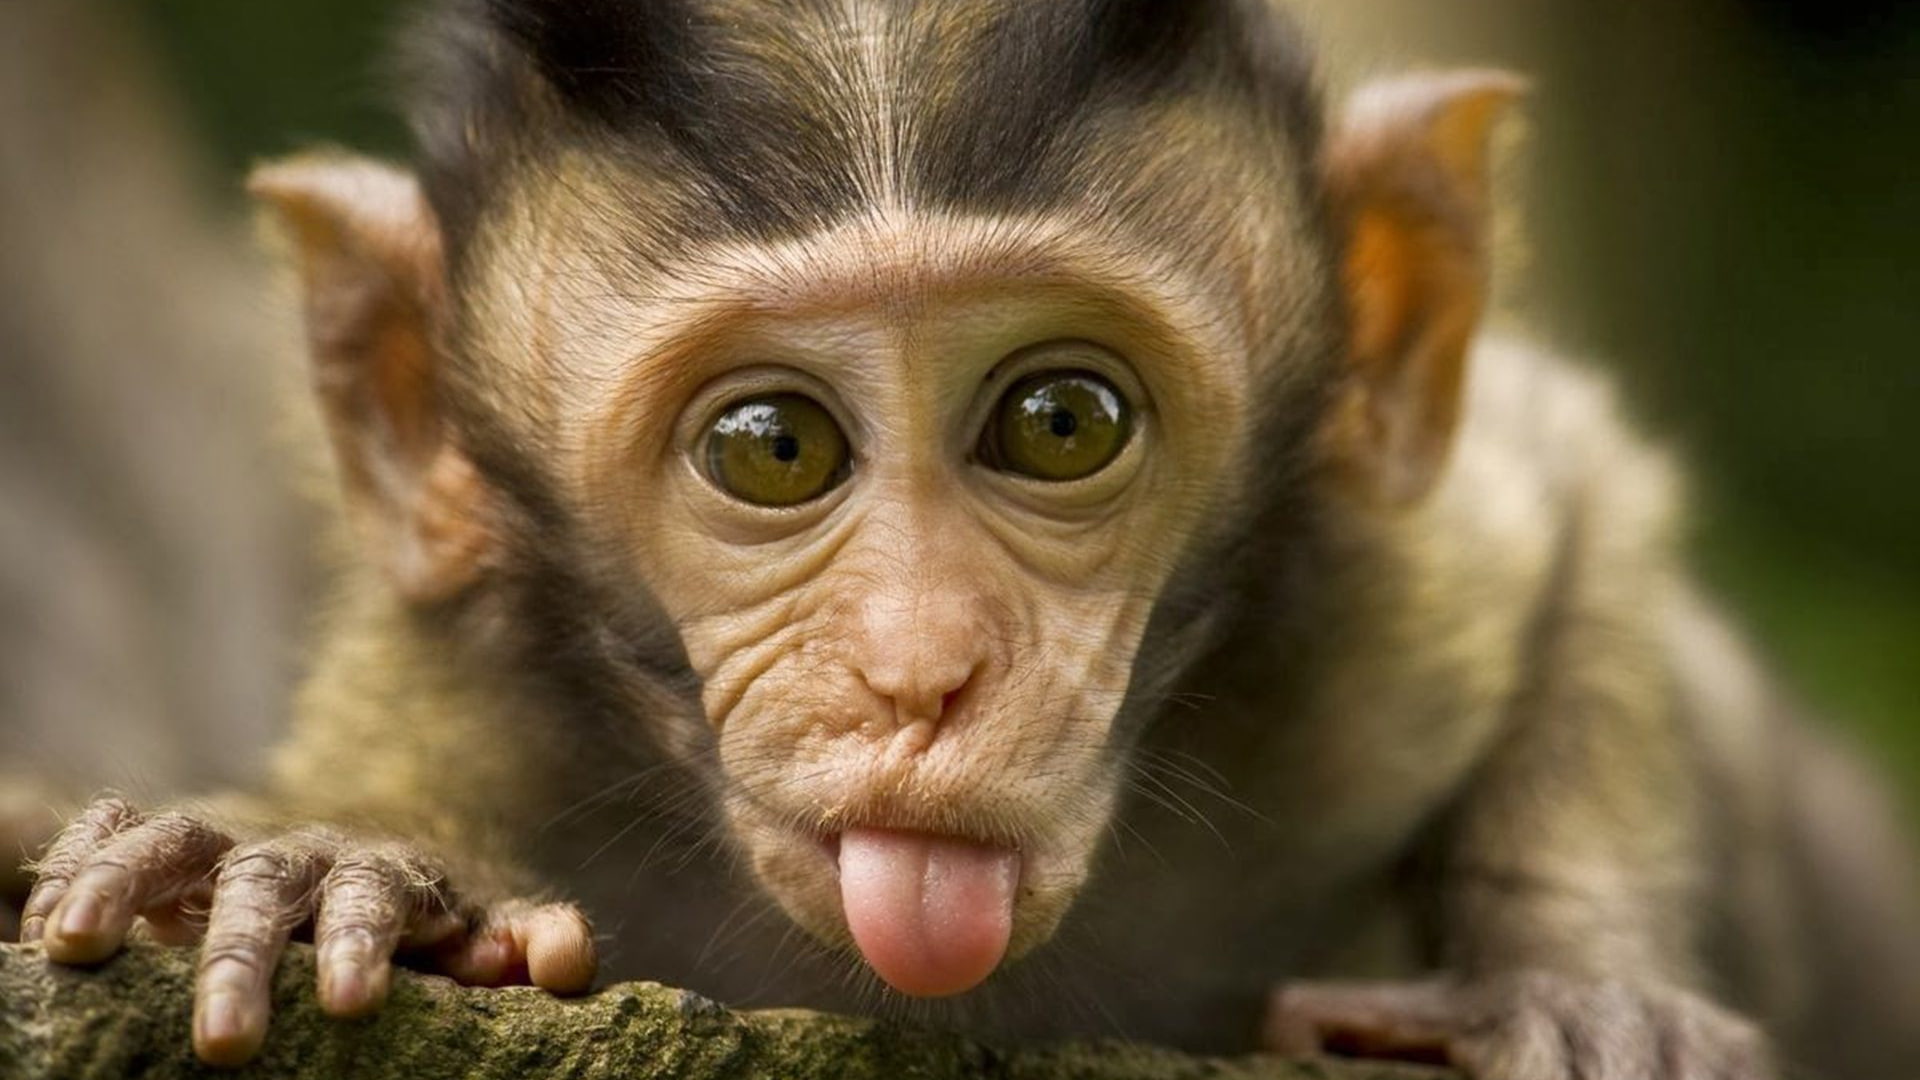 34 Daftar Gambar Monyet Lucu  Hd Terkeren Unik